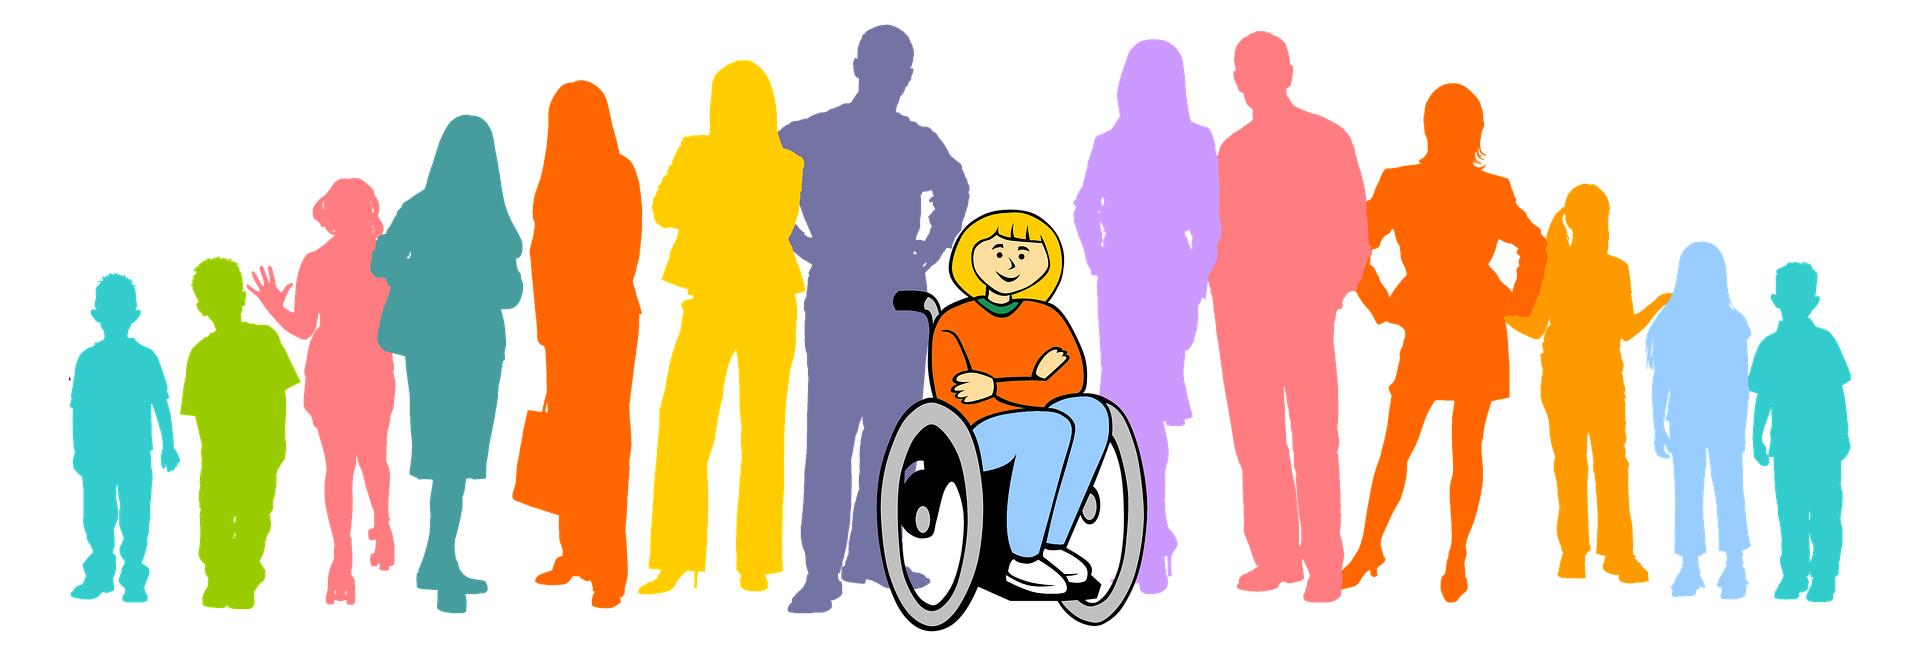 Интеграция и адаптация инвалидов. Люди с ограниченными возможностями картинки. Социализация людей с инвалидностью. Люди с ОВЗ. Общество инвалидов.